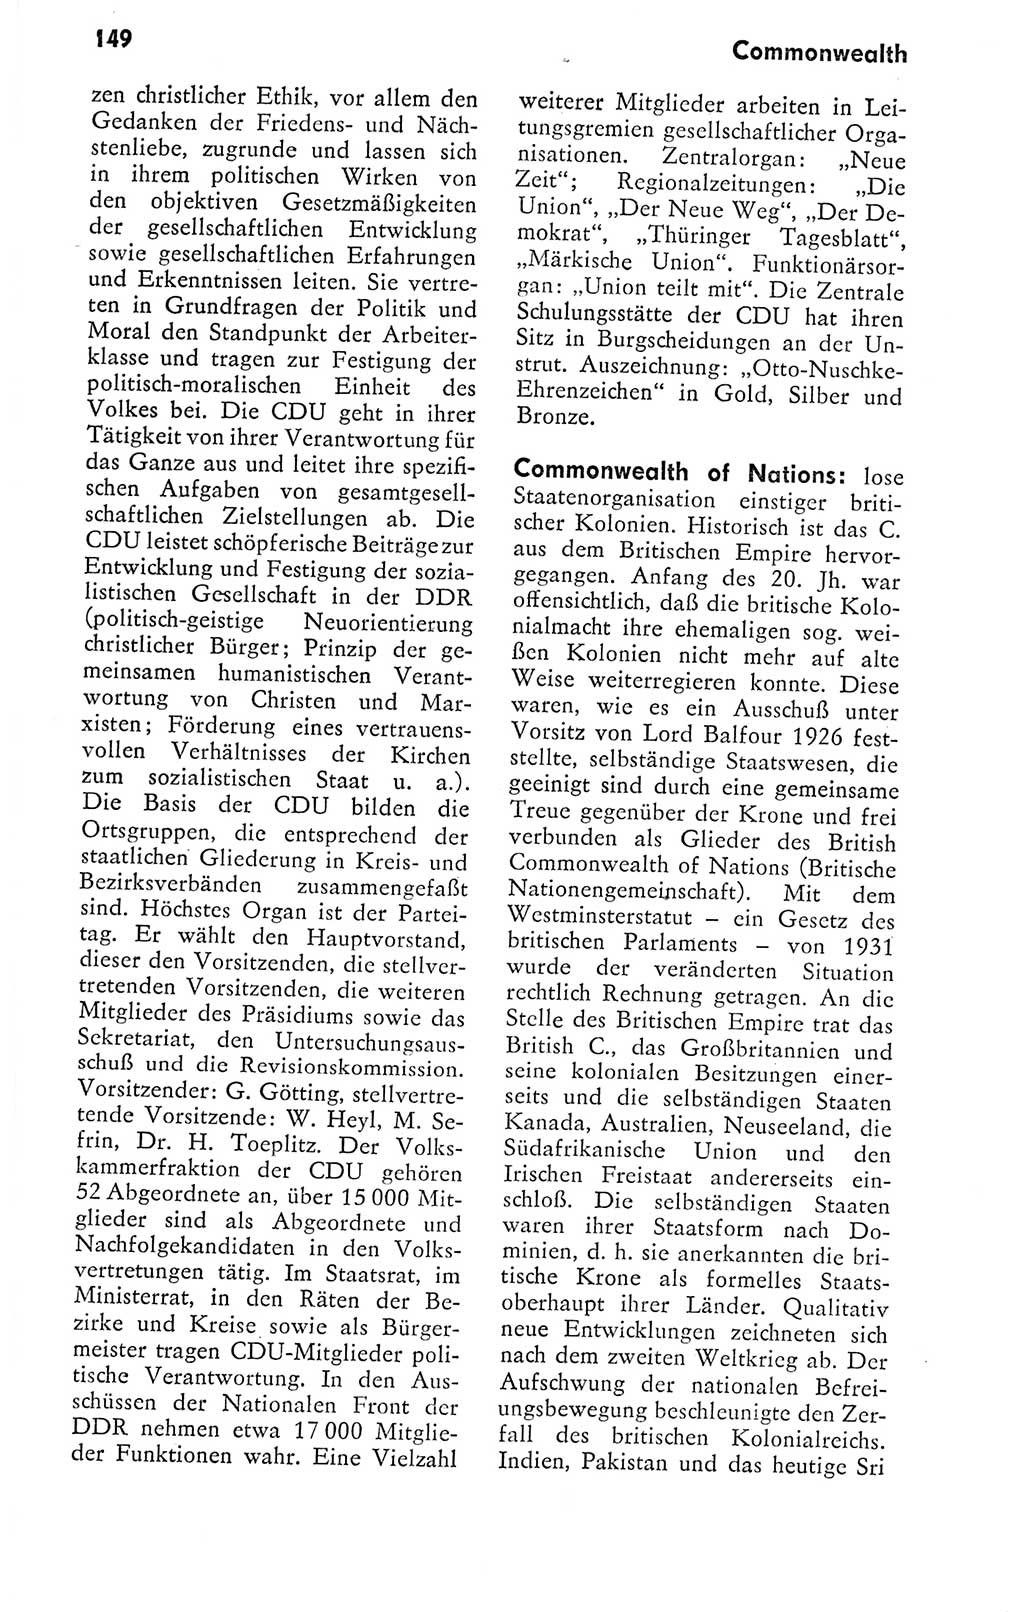 Kleines politisches Wörterbuch [Deutsche Demokratische Republik (DDR)] 1978, Seite 149 (Kl. pol. Wb. DDR 1978, S. 149)